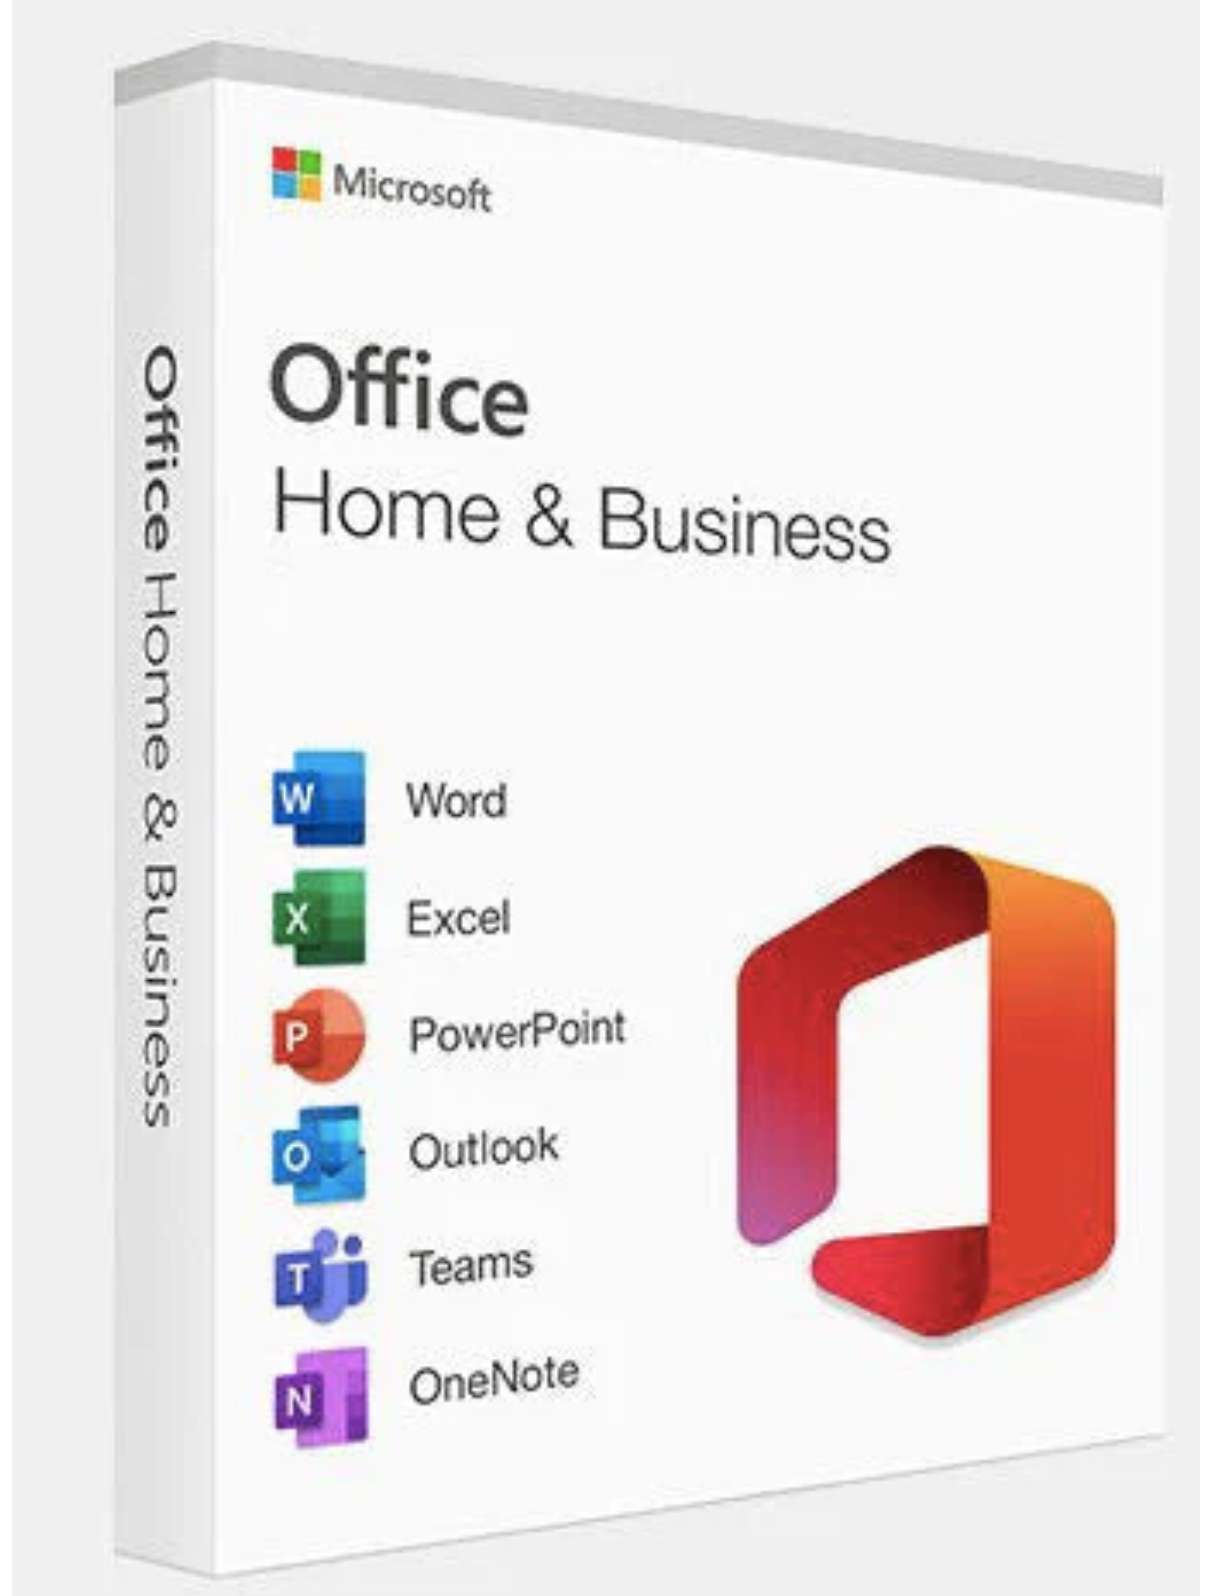 


                                                     Microsoft Office Home & Business ömür boyu lisansını sadece $16.88'a edinin. Bu, normal fiyatın üzerinde %91 tasarruf sağlayan bir fırsattır. Bu lisans, tek seferlik bir satın alma işlemidir ve aylık ücret gerektirmez.